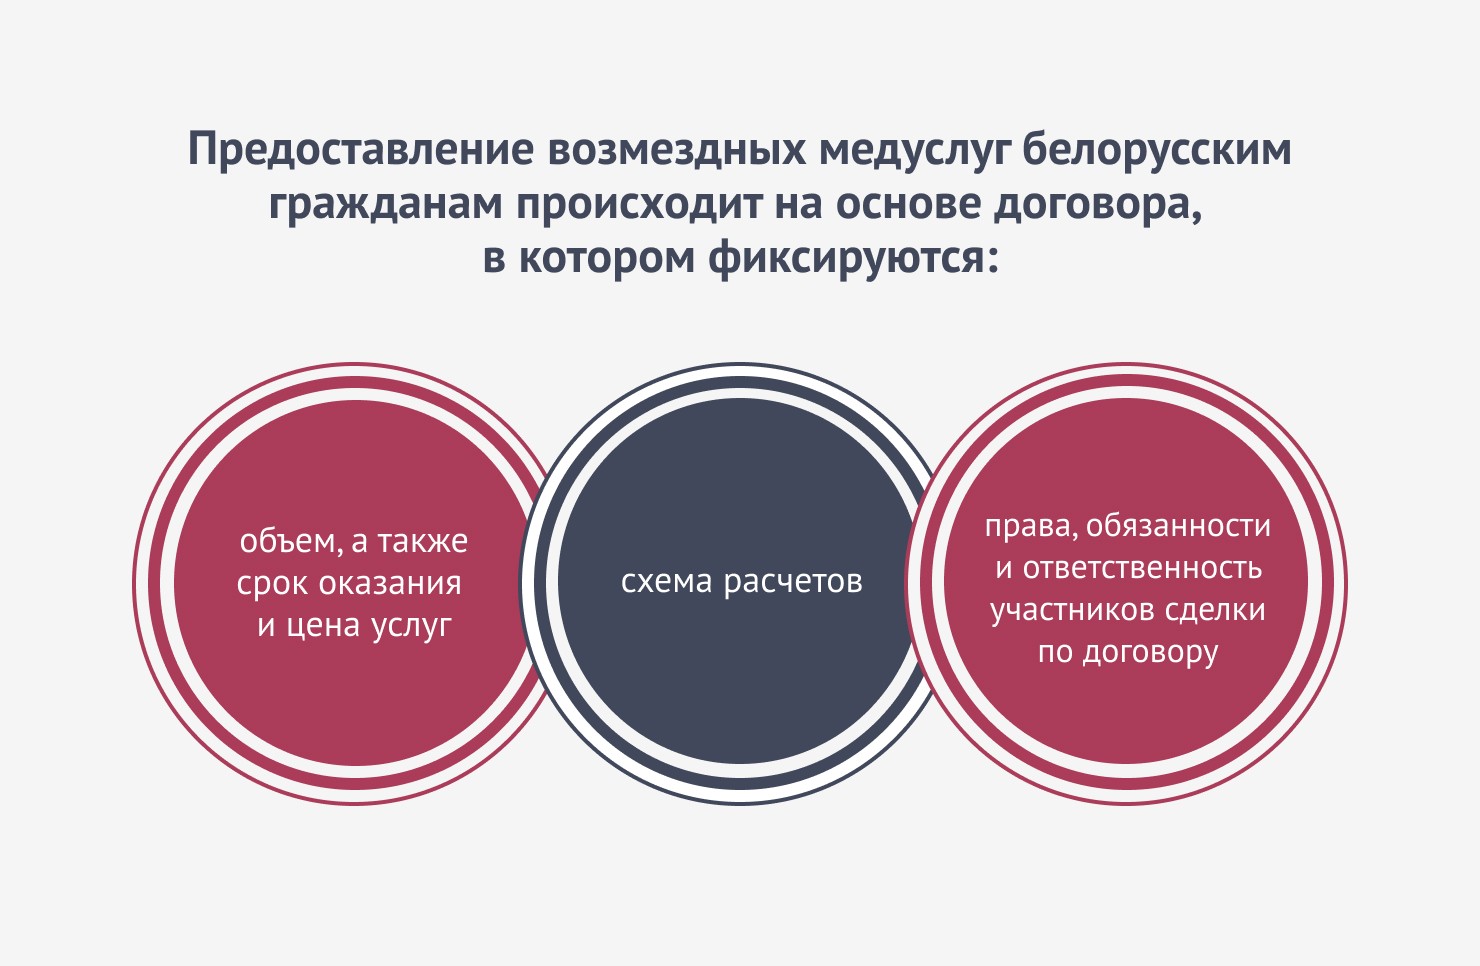 Предоставление возмездных медуслуг белорусским гражданам происходит на основе договора